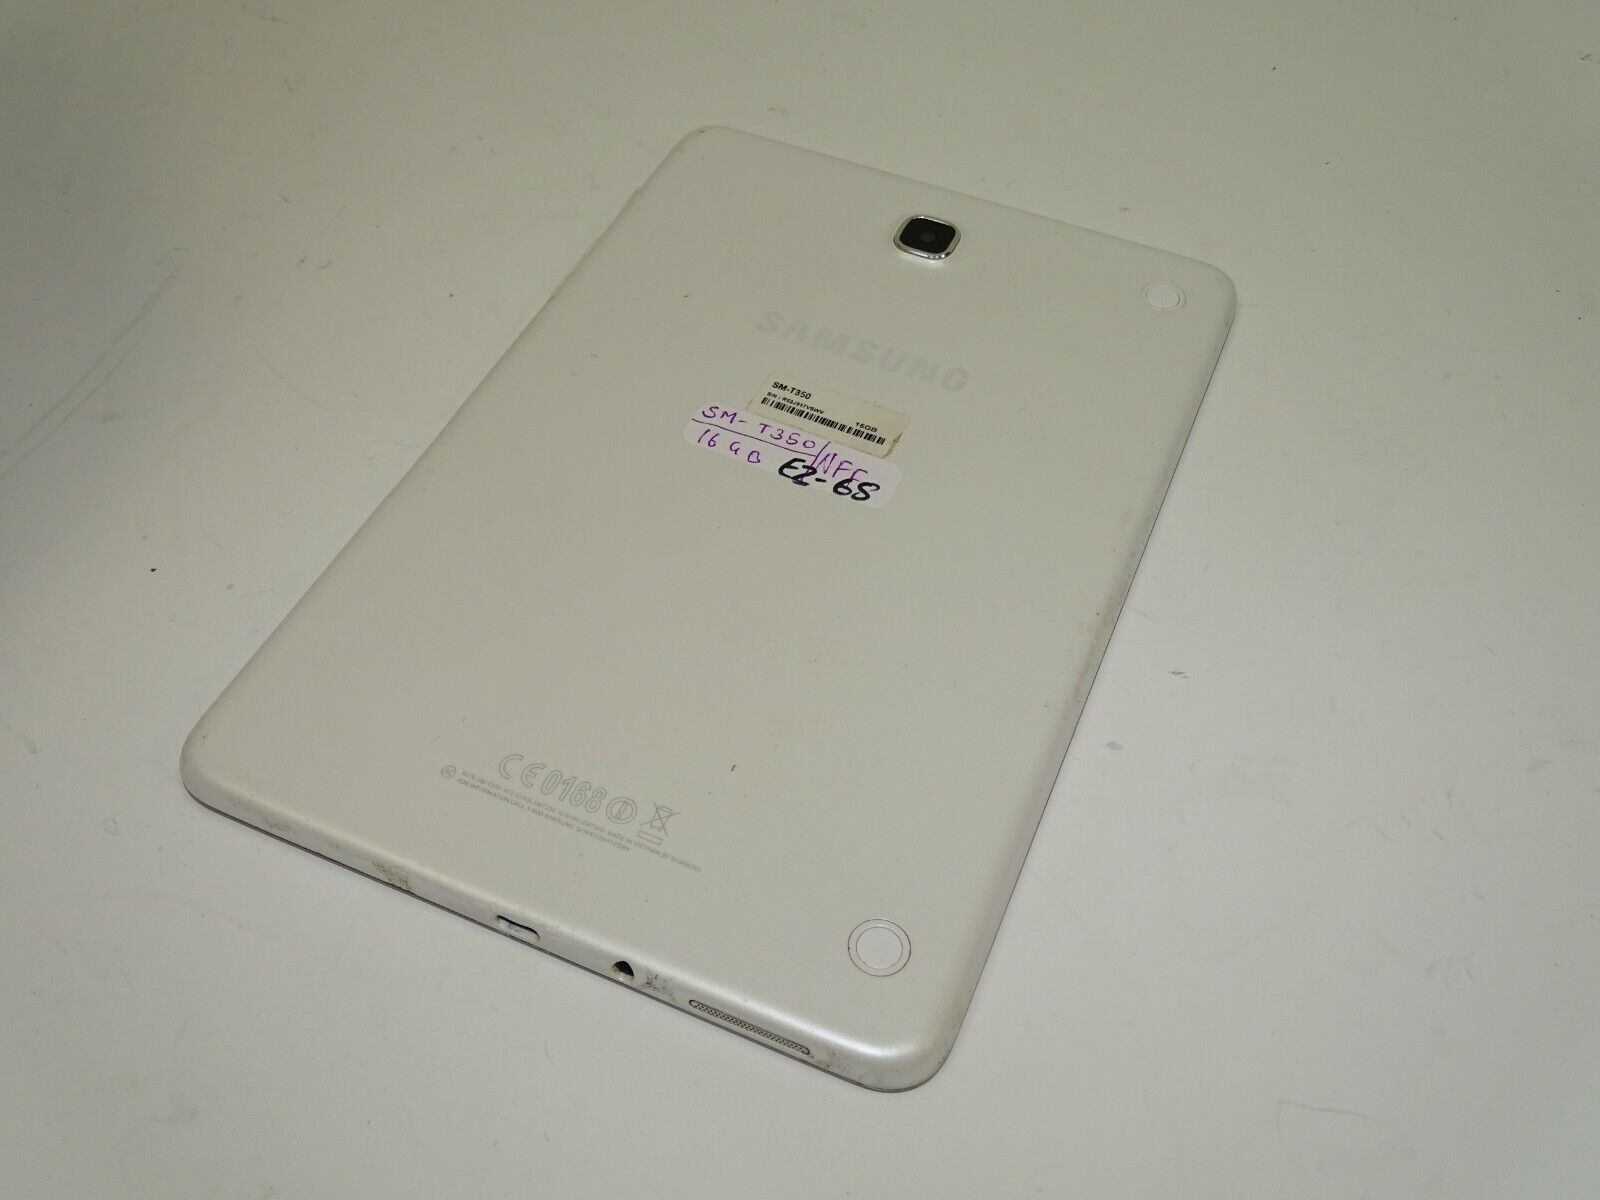 Samsung Galaxy Tab A SM-T350 16GB, Wi-Fi, 8in - White (EZ68)